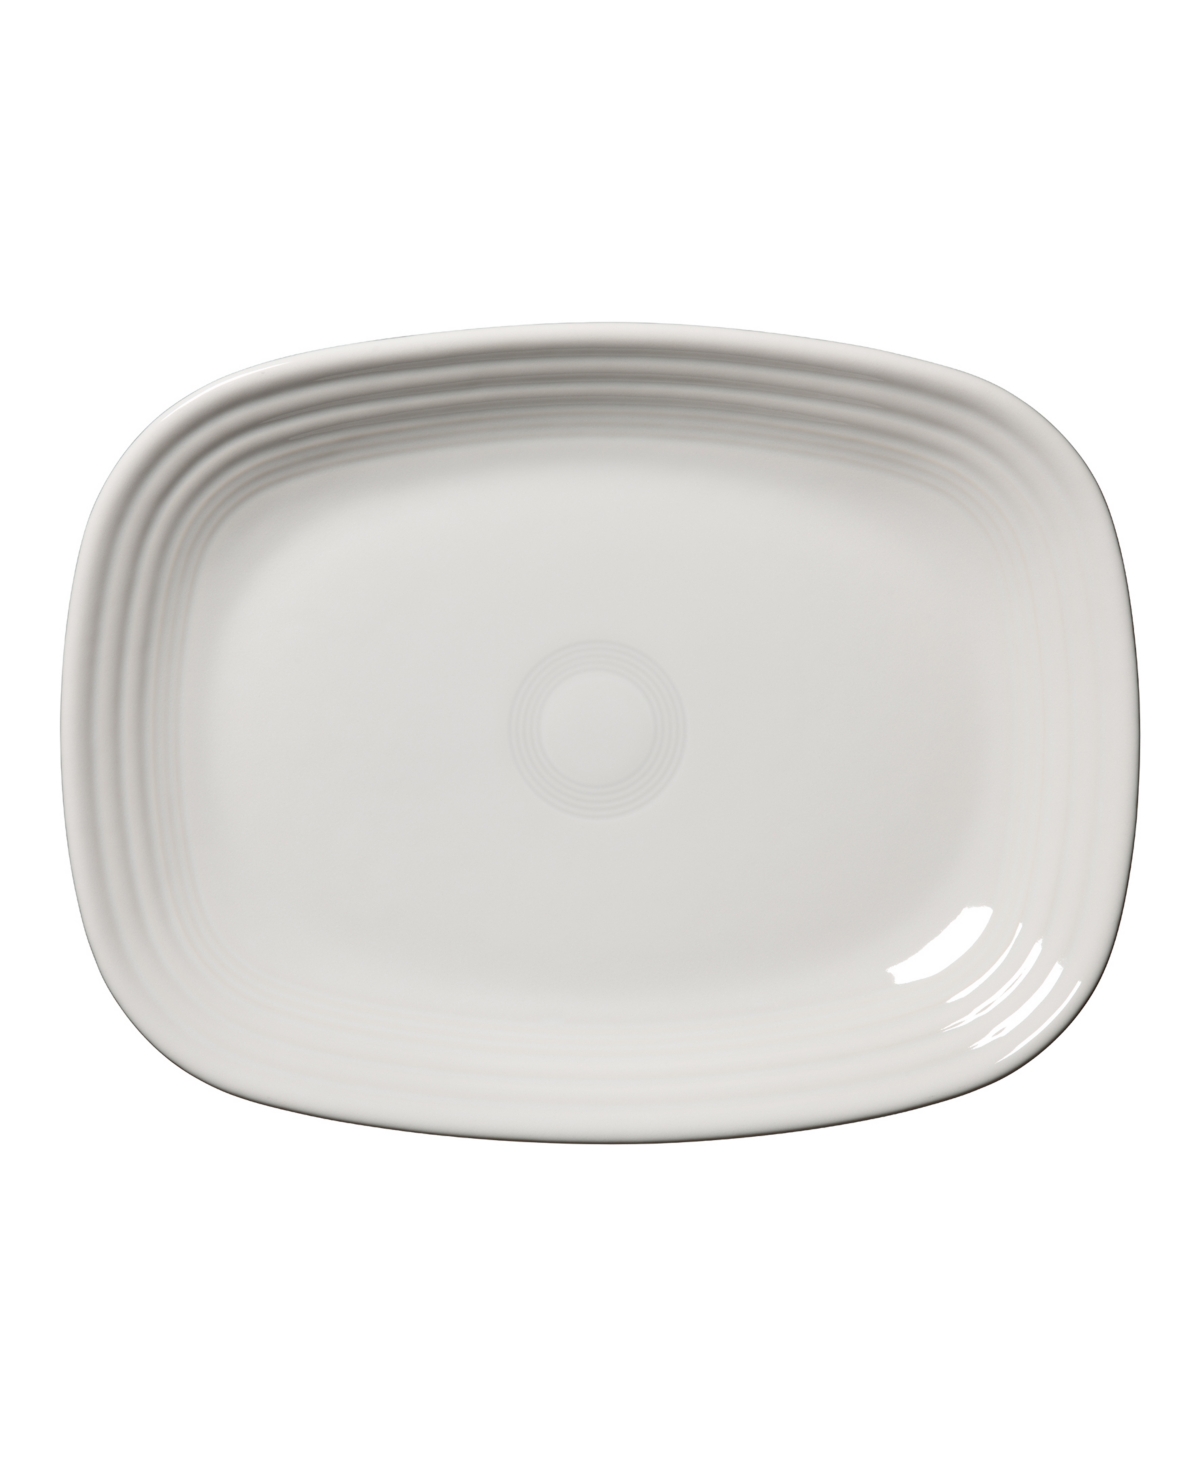 Fiesta Rectangular Platter 11 3/4 In White